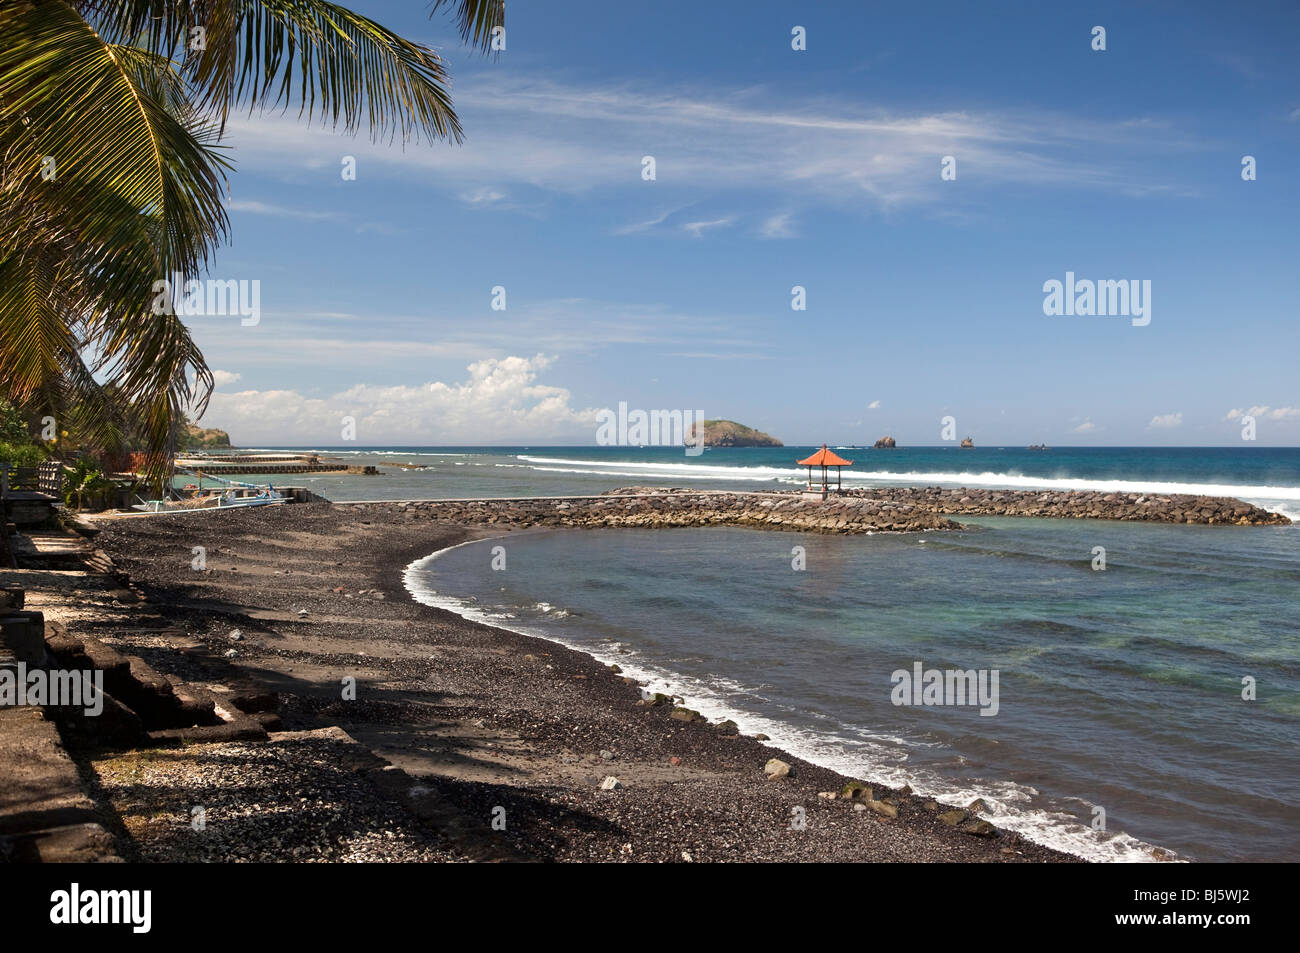 Indonesia, Bali, Candidasa, frangiflutti artificiale costruito per proteggere la spiaggia rimane Foto Stock